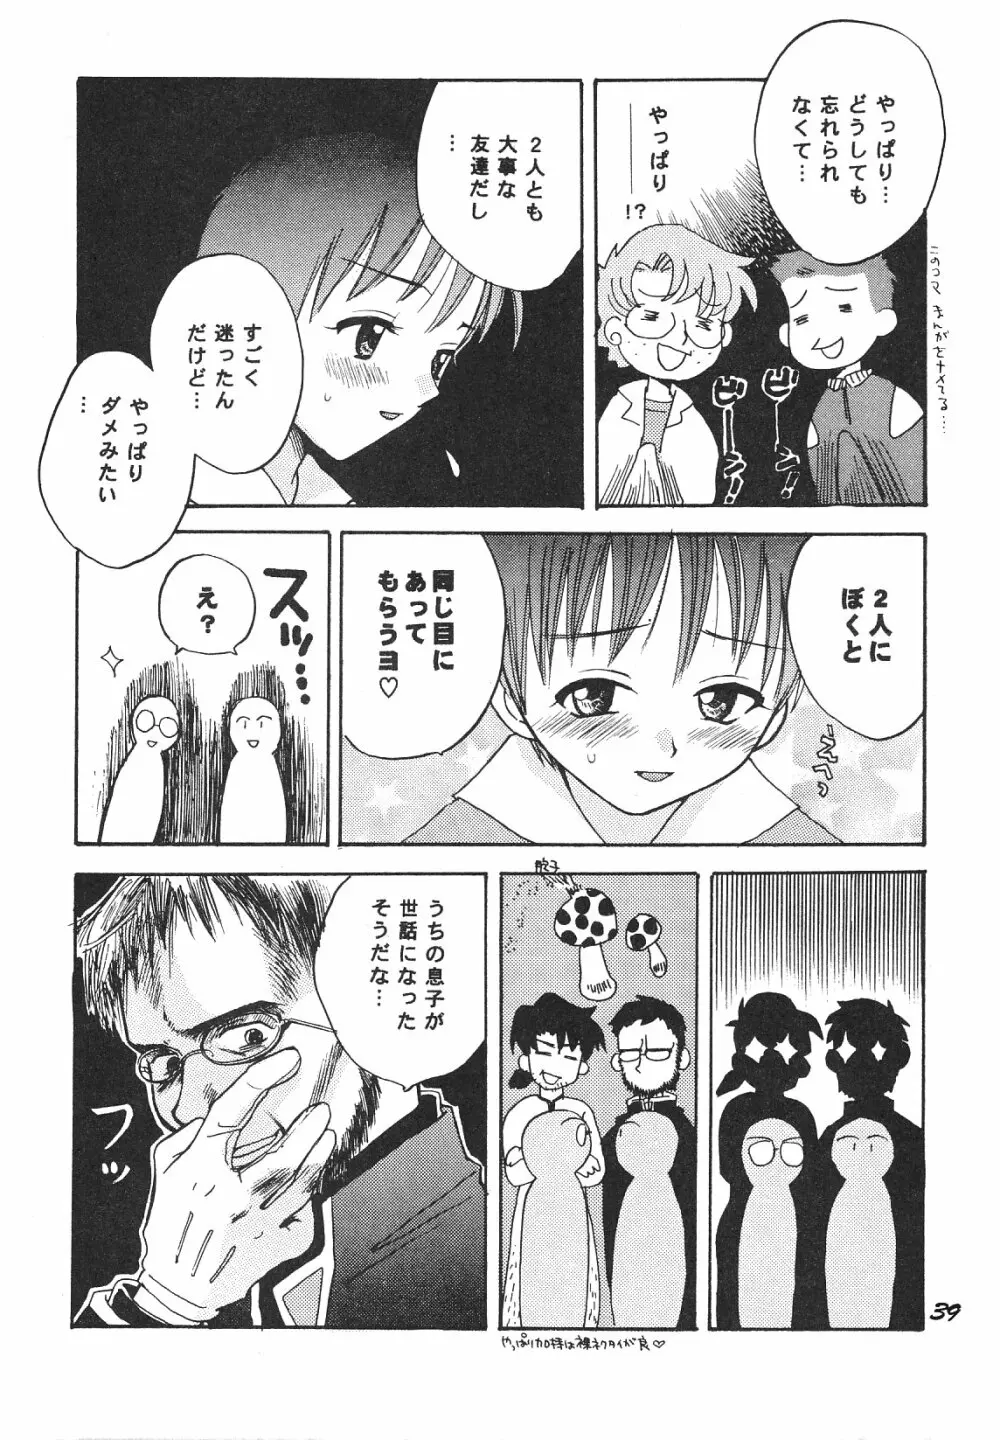 Maniac Juice 女シンジ再録集 '96-'99 - page39